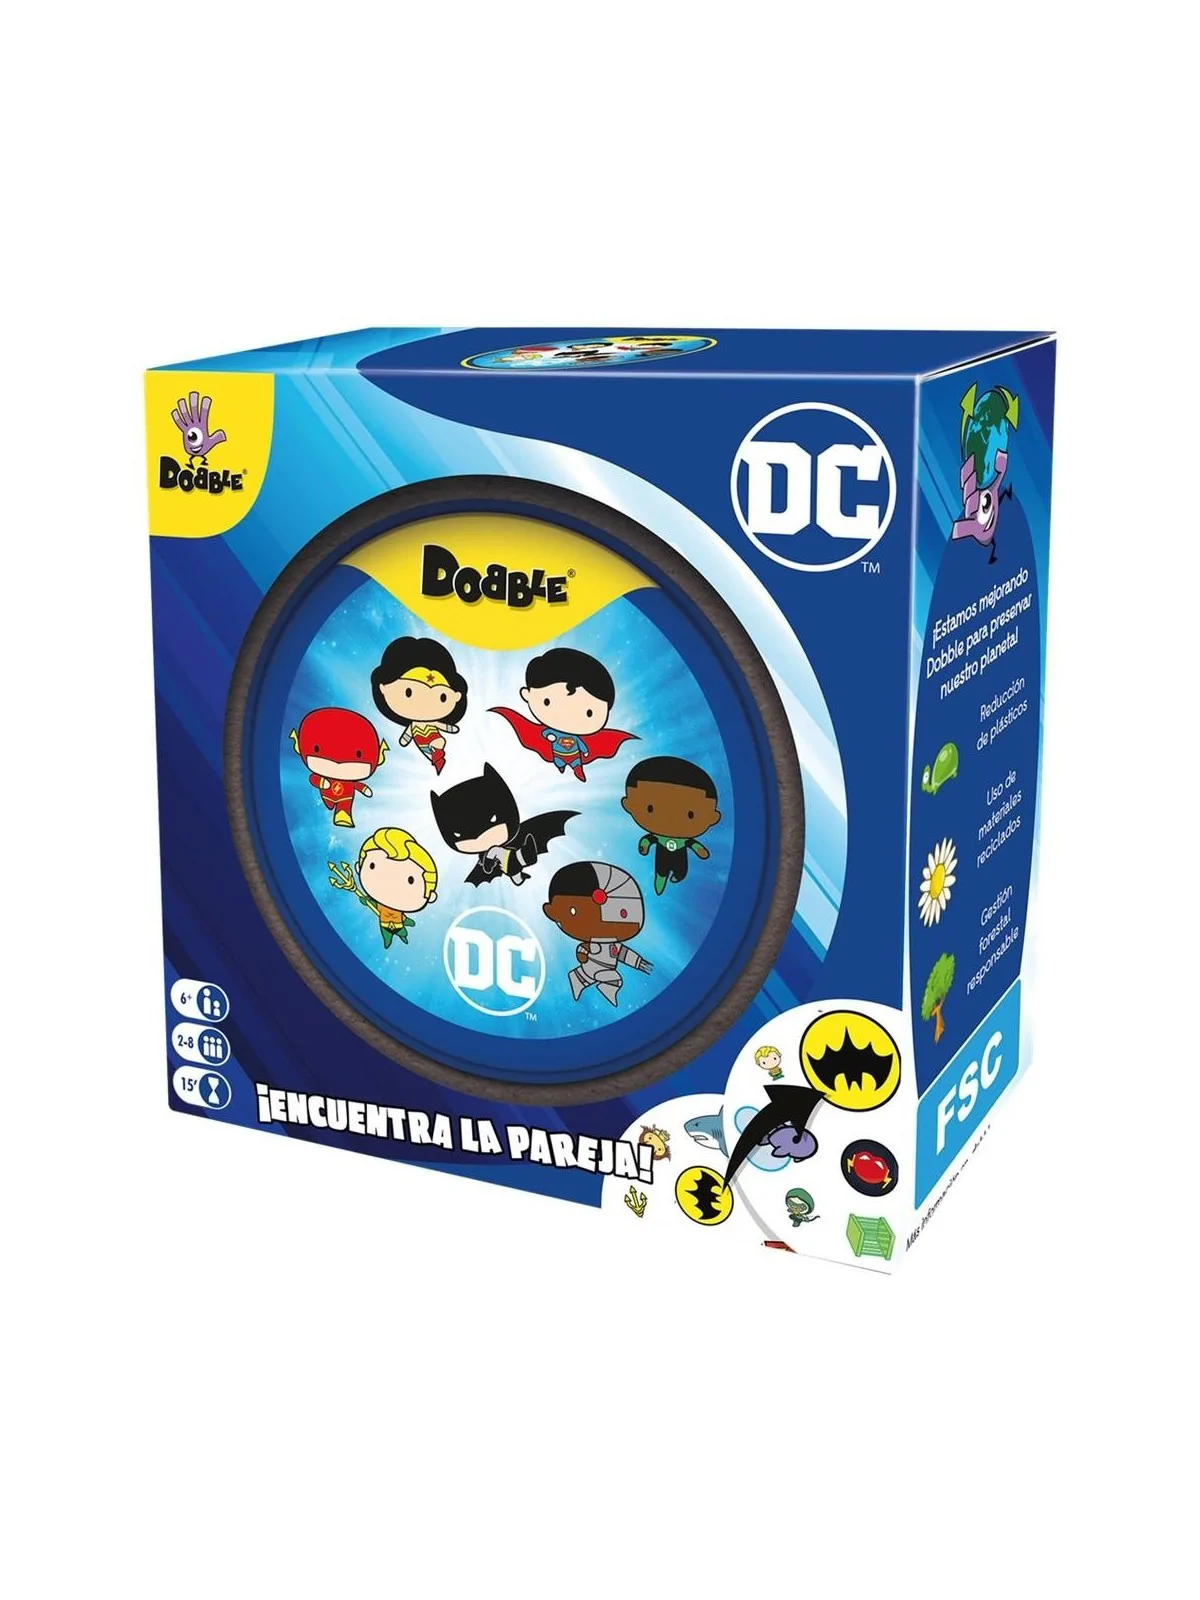 Comprar Dobble DC Universe barato al mejor precio 14,44 € de Juegos